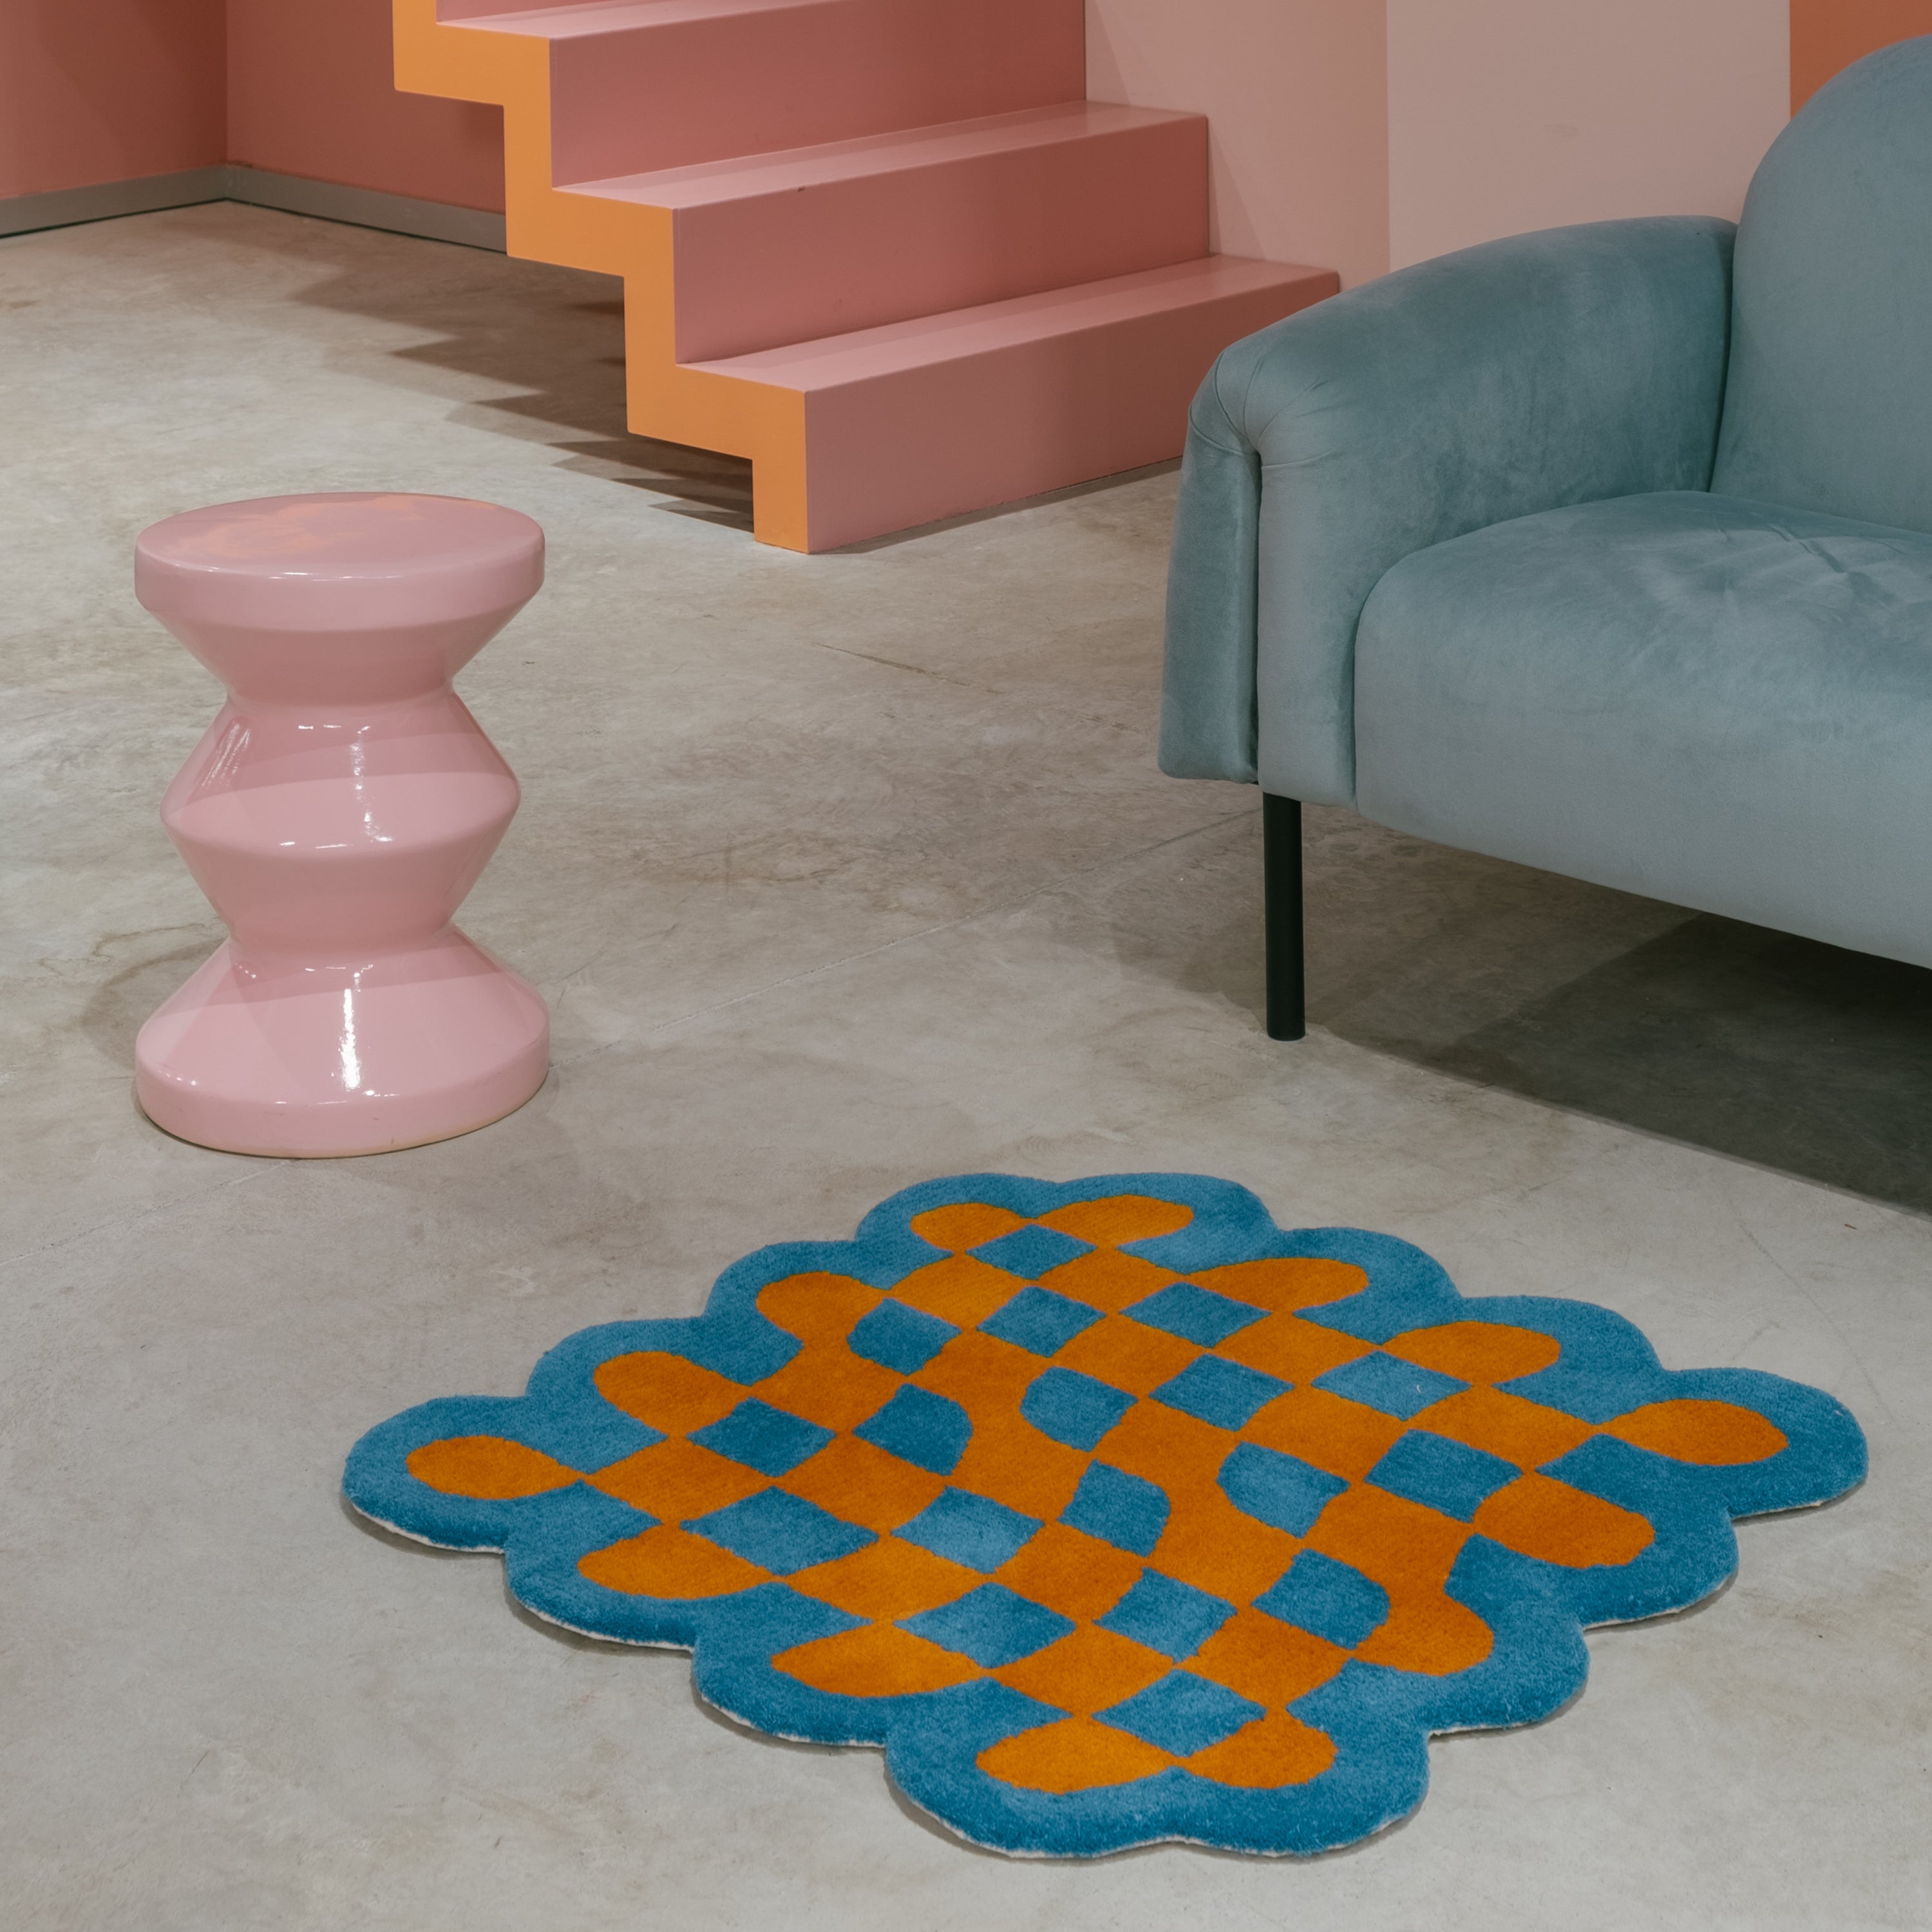 Wavy chess board rug - Mediterranean blue x Jaffa orange